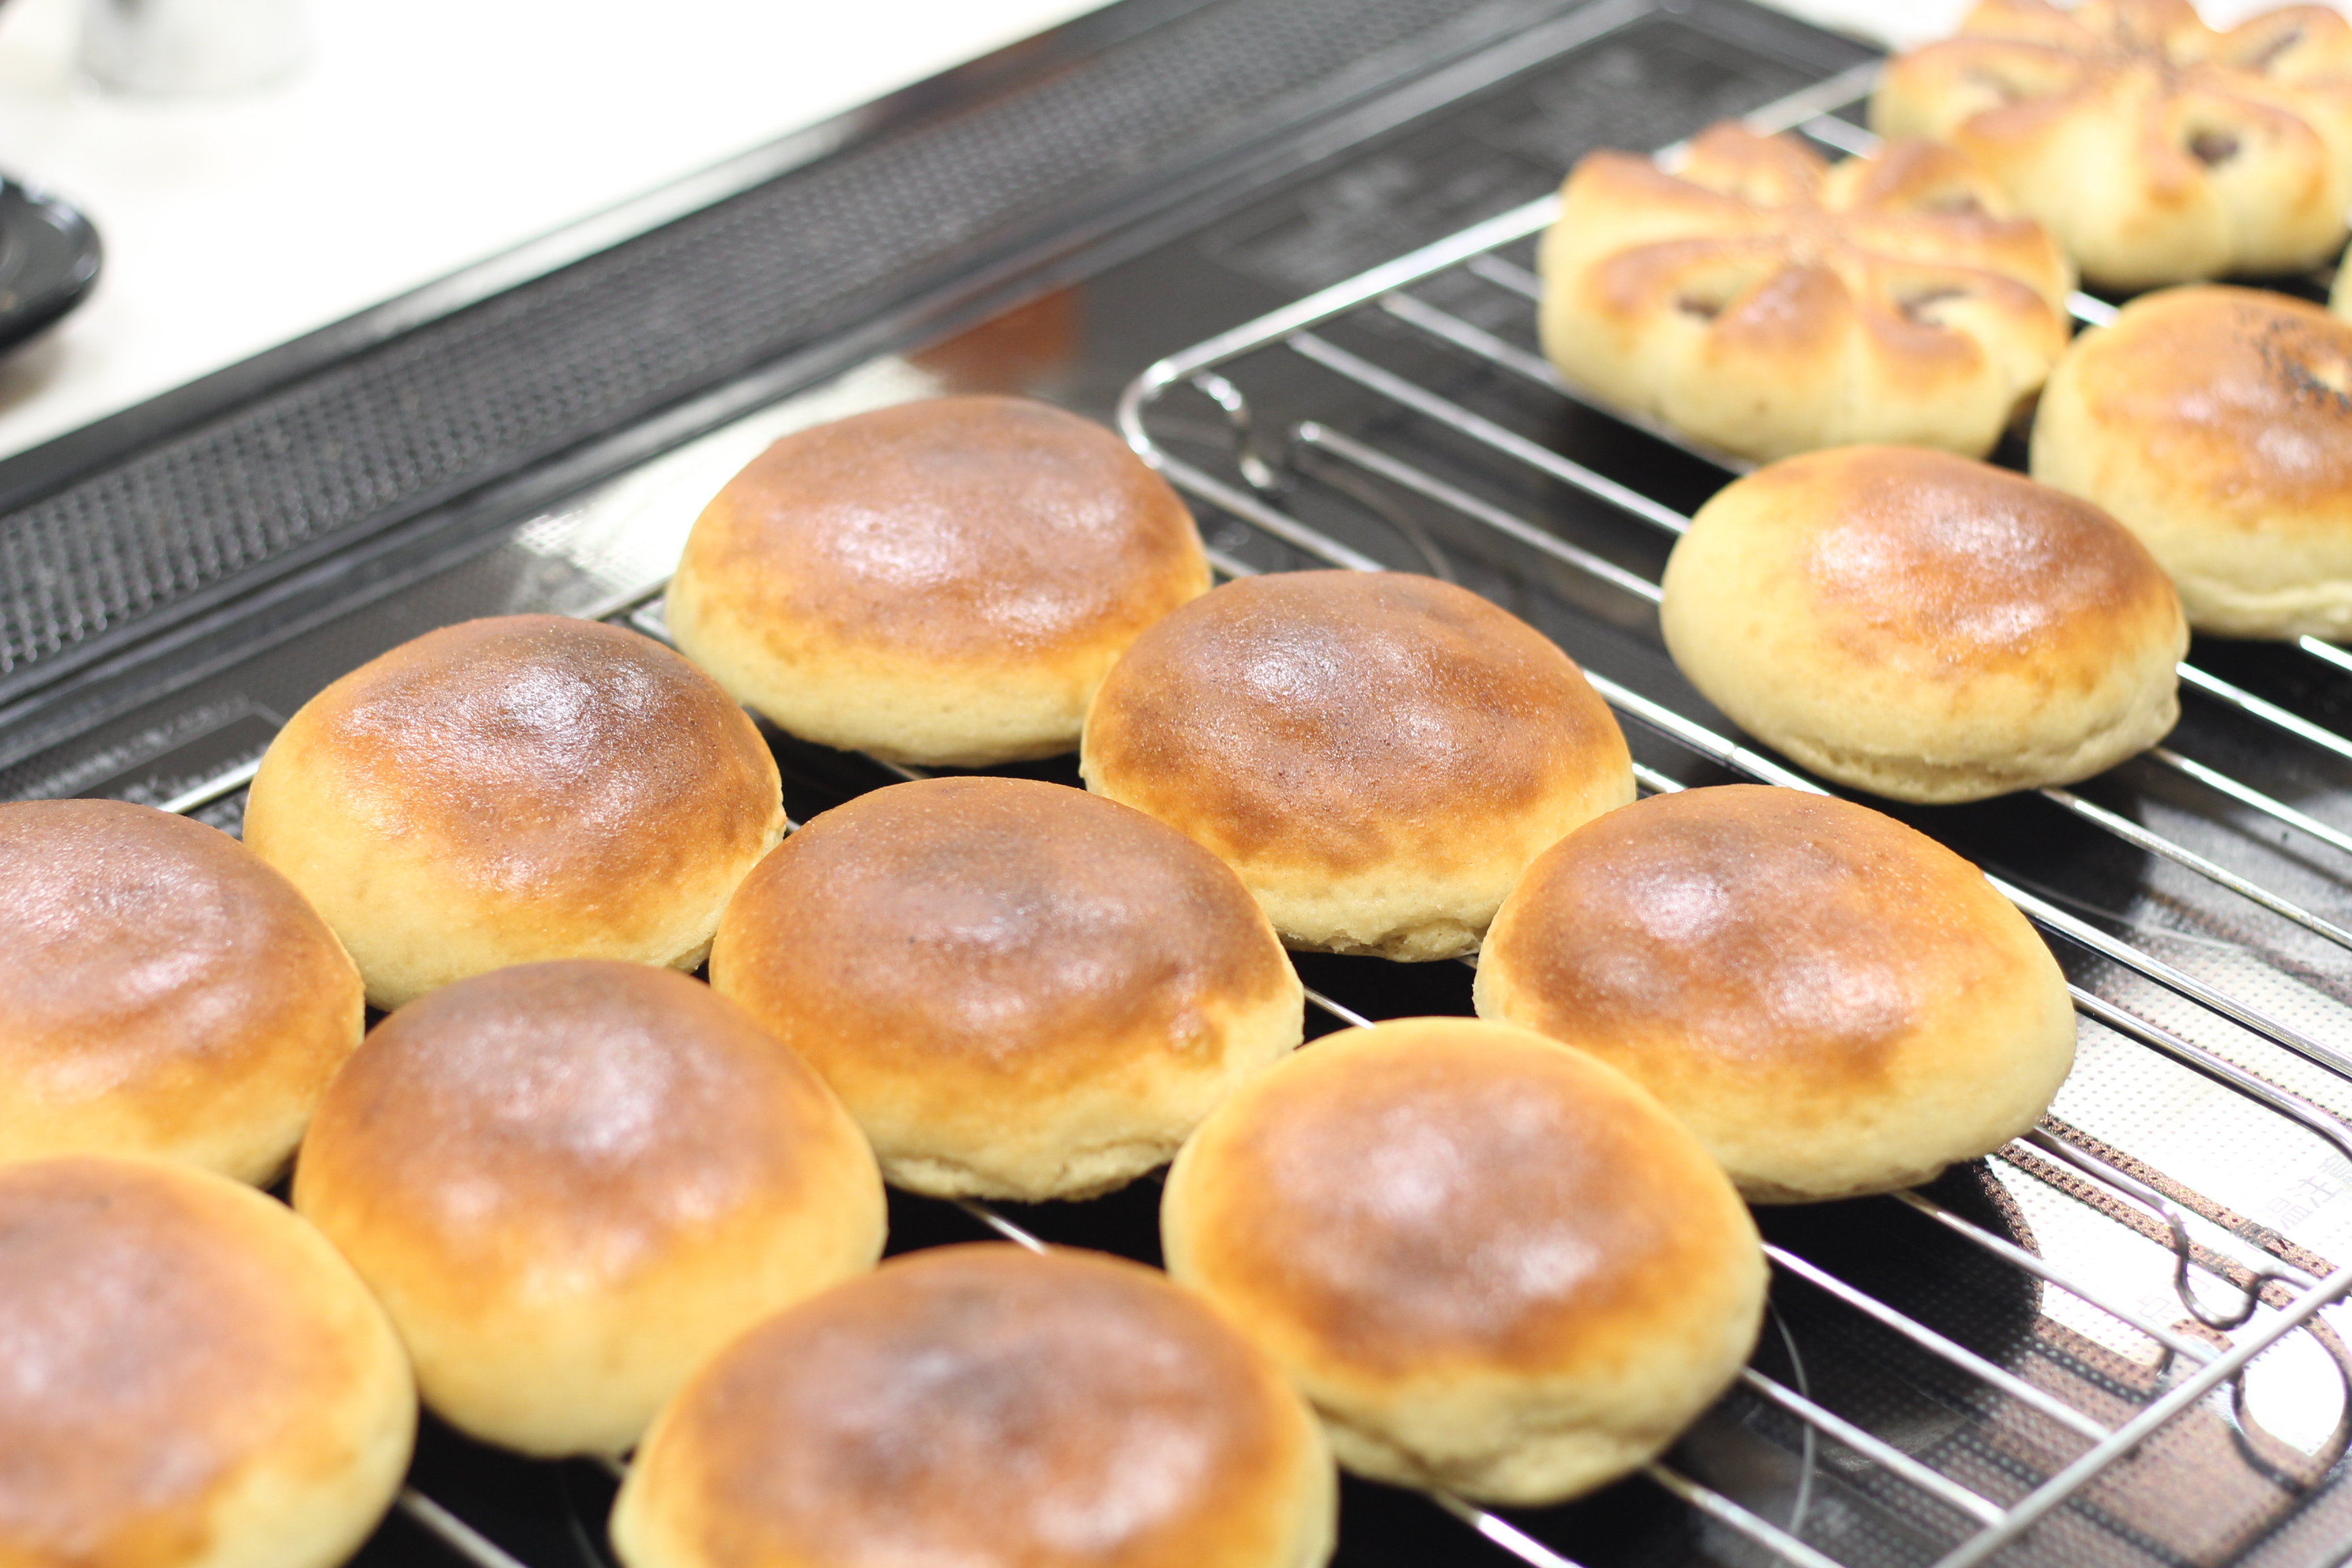 江部粉糖質制限パン、餡子から作るあんパン。a-ta-sante糖質制限パン料理教室。阿倍野区西田辺。